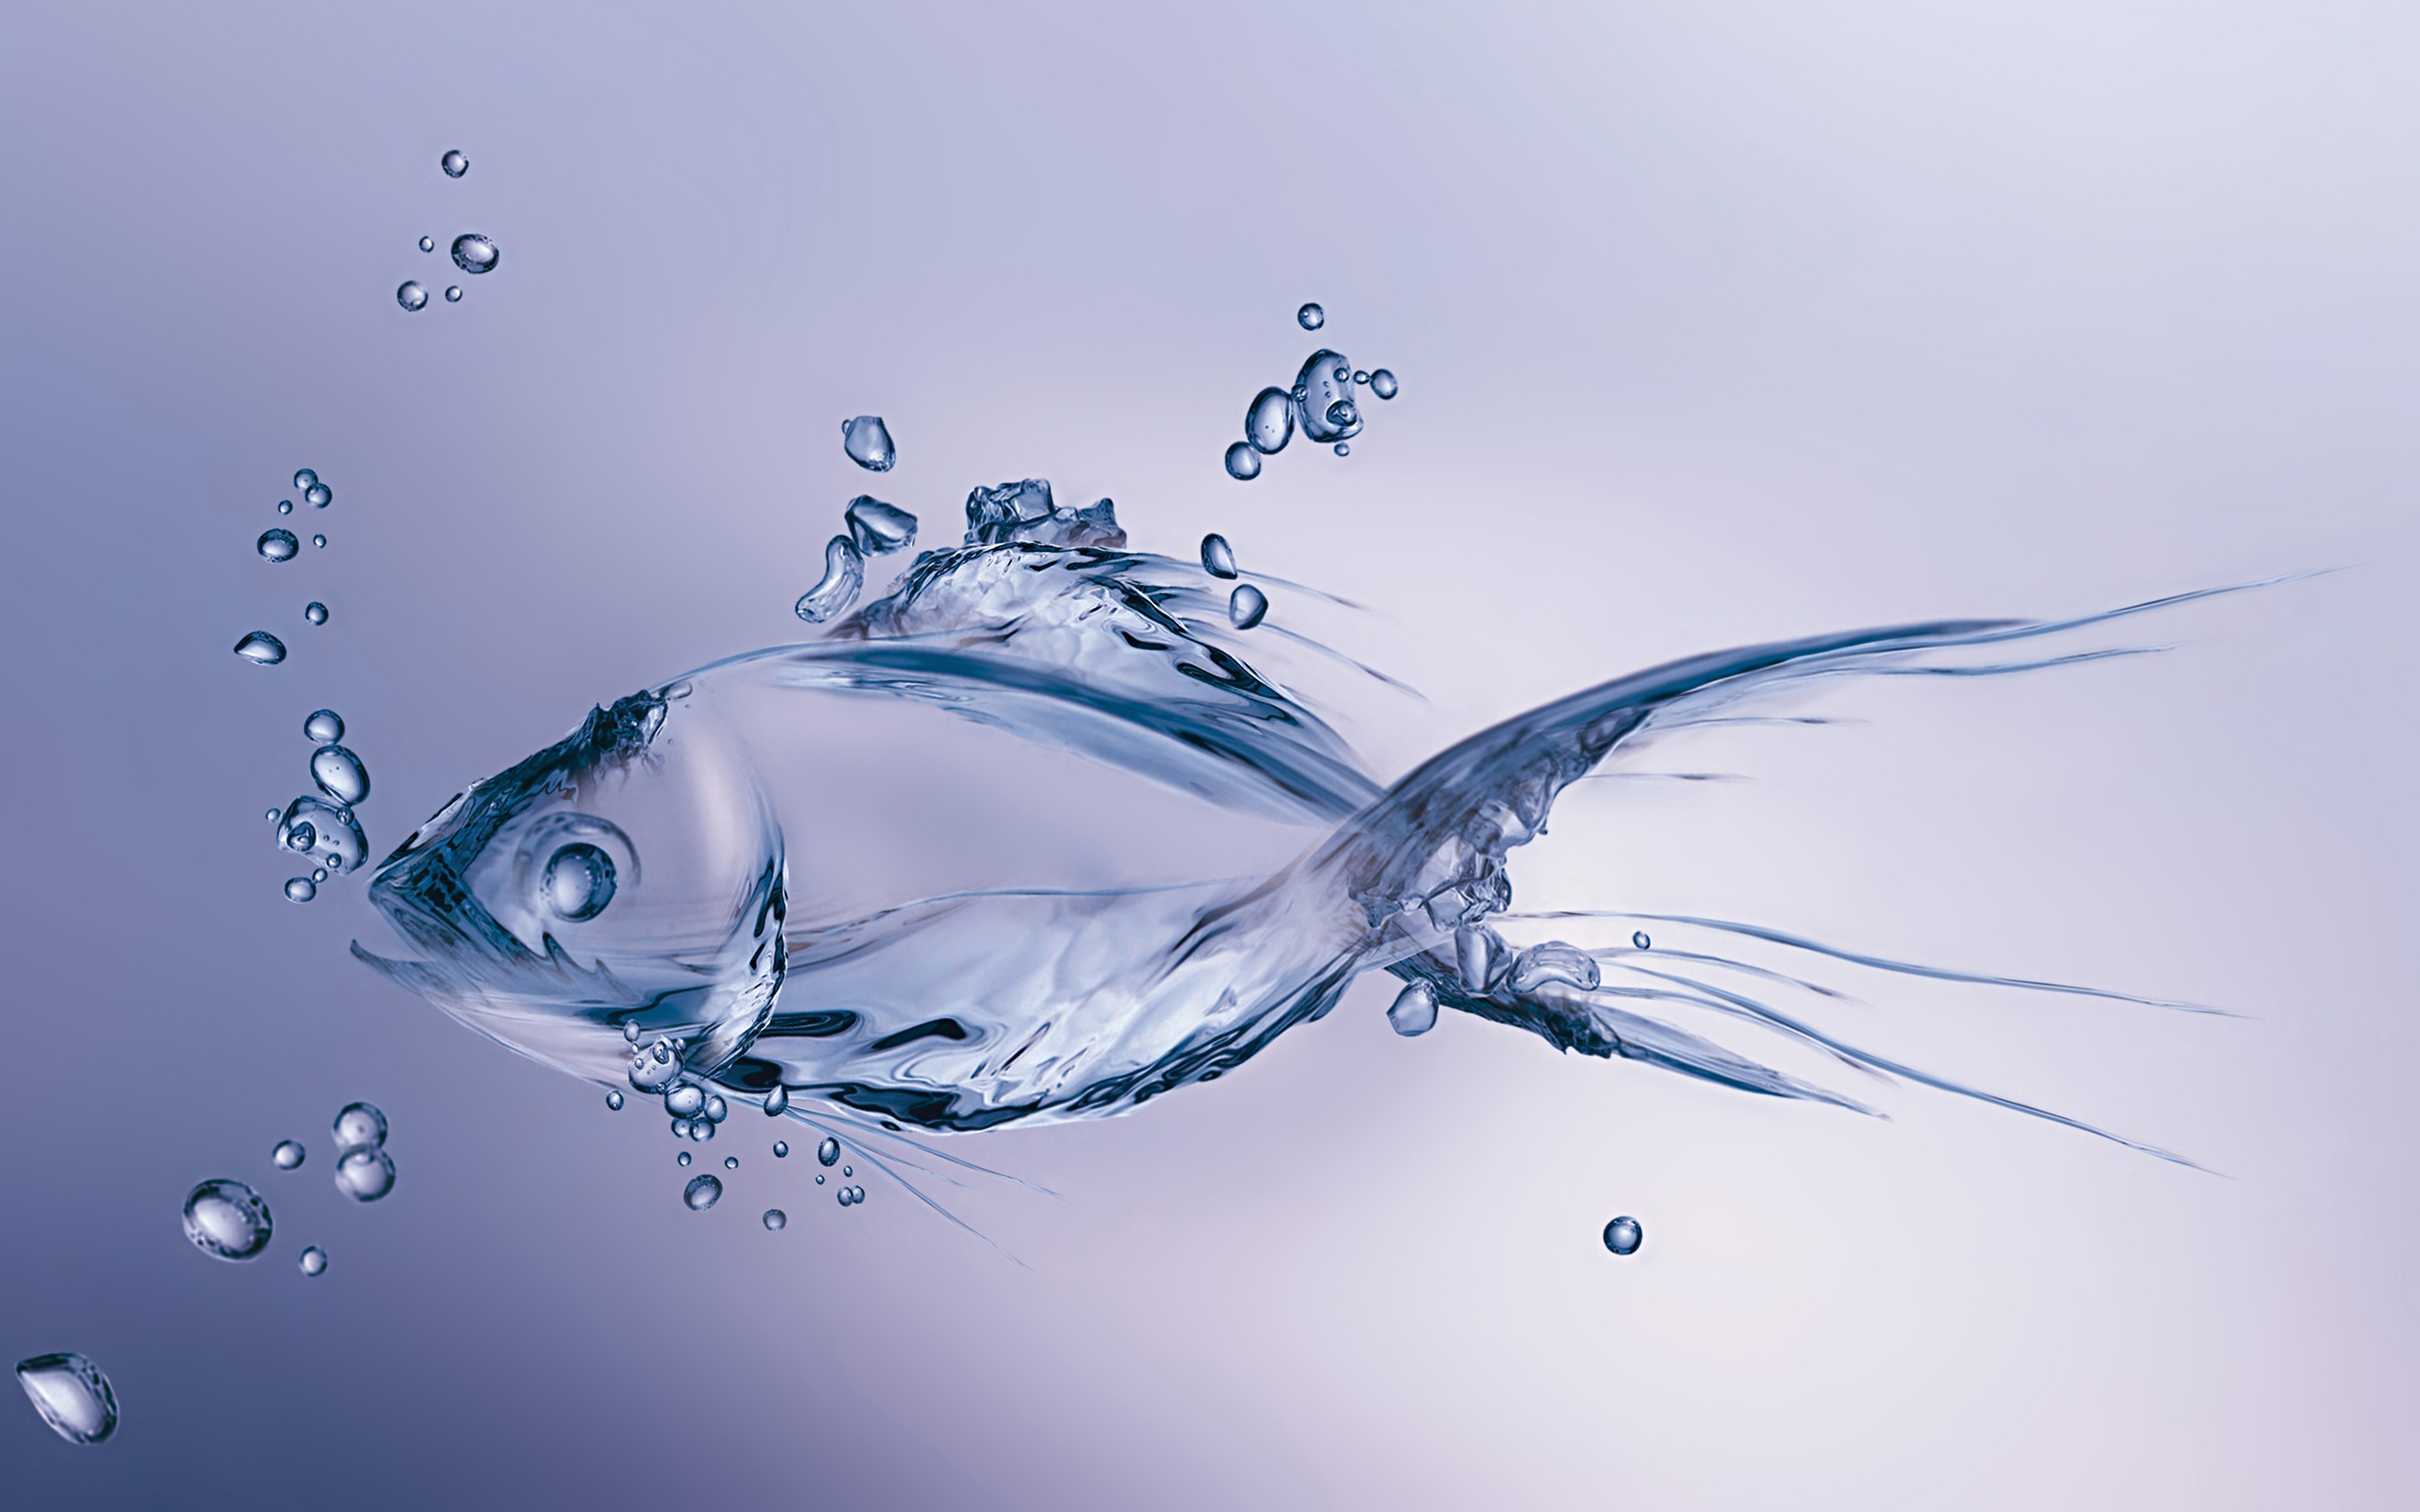 [49+] Fish in Water Wallpaper | WallpaperSafari.com